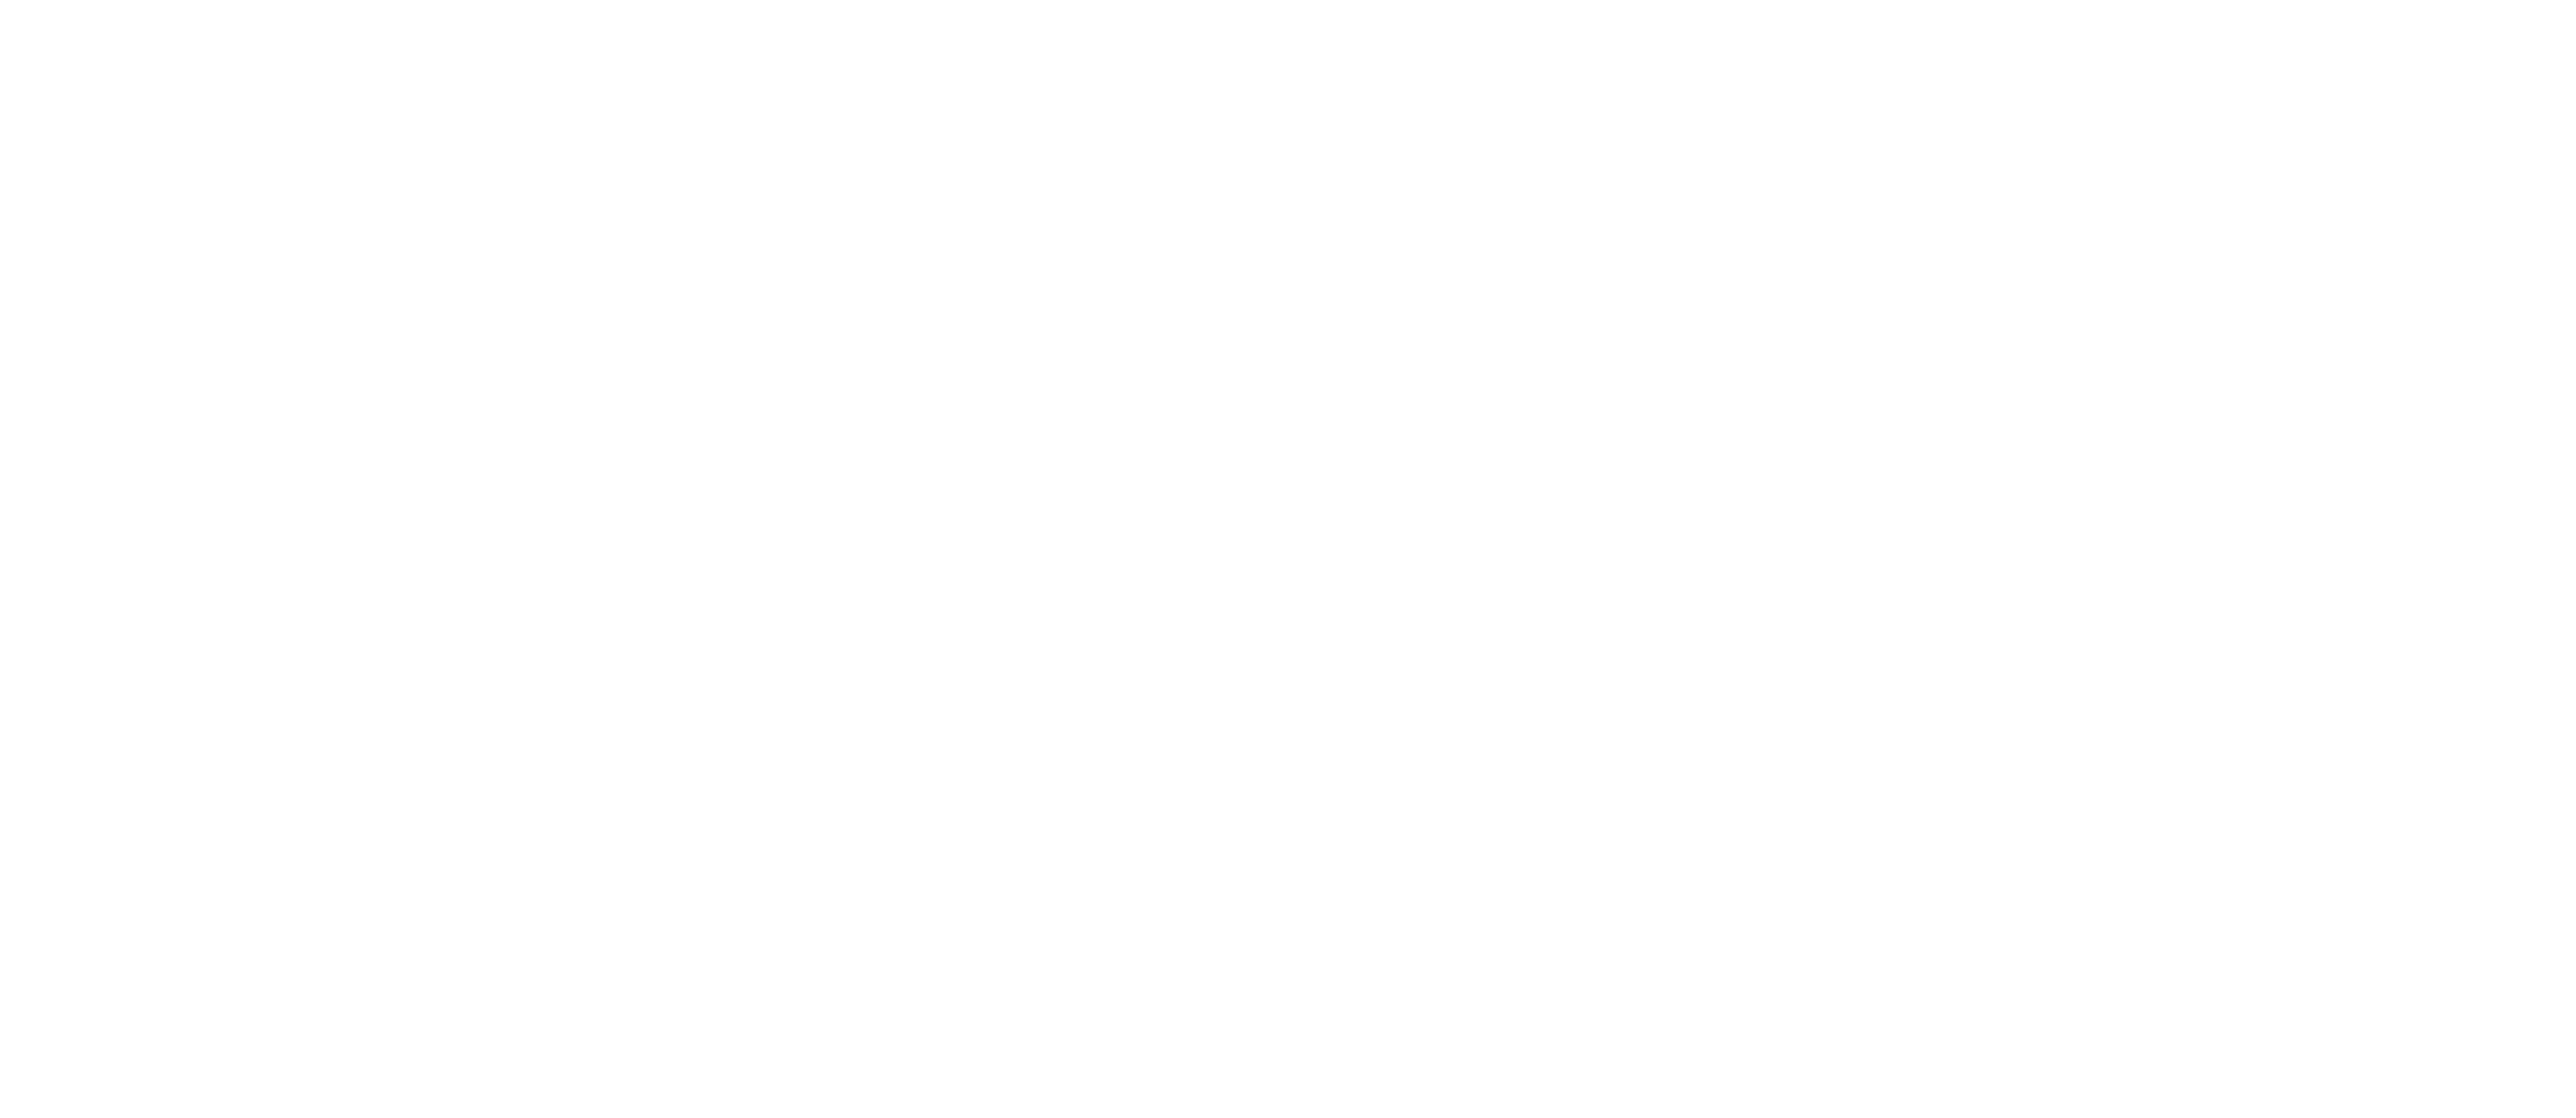 臺南市政府影視支援中心 logo圖